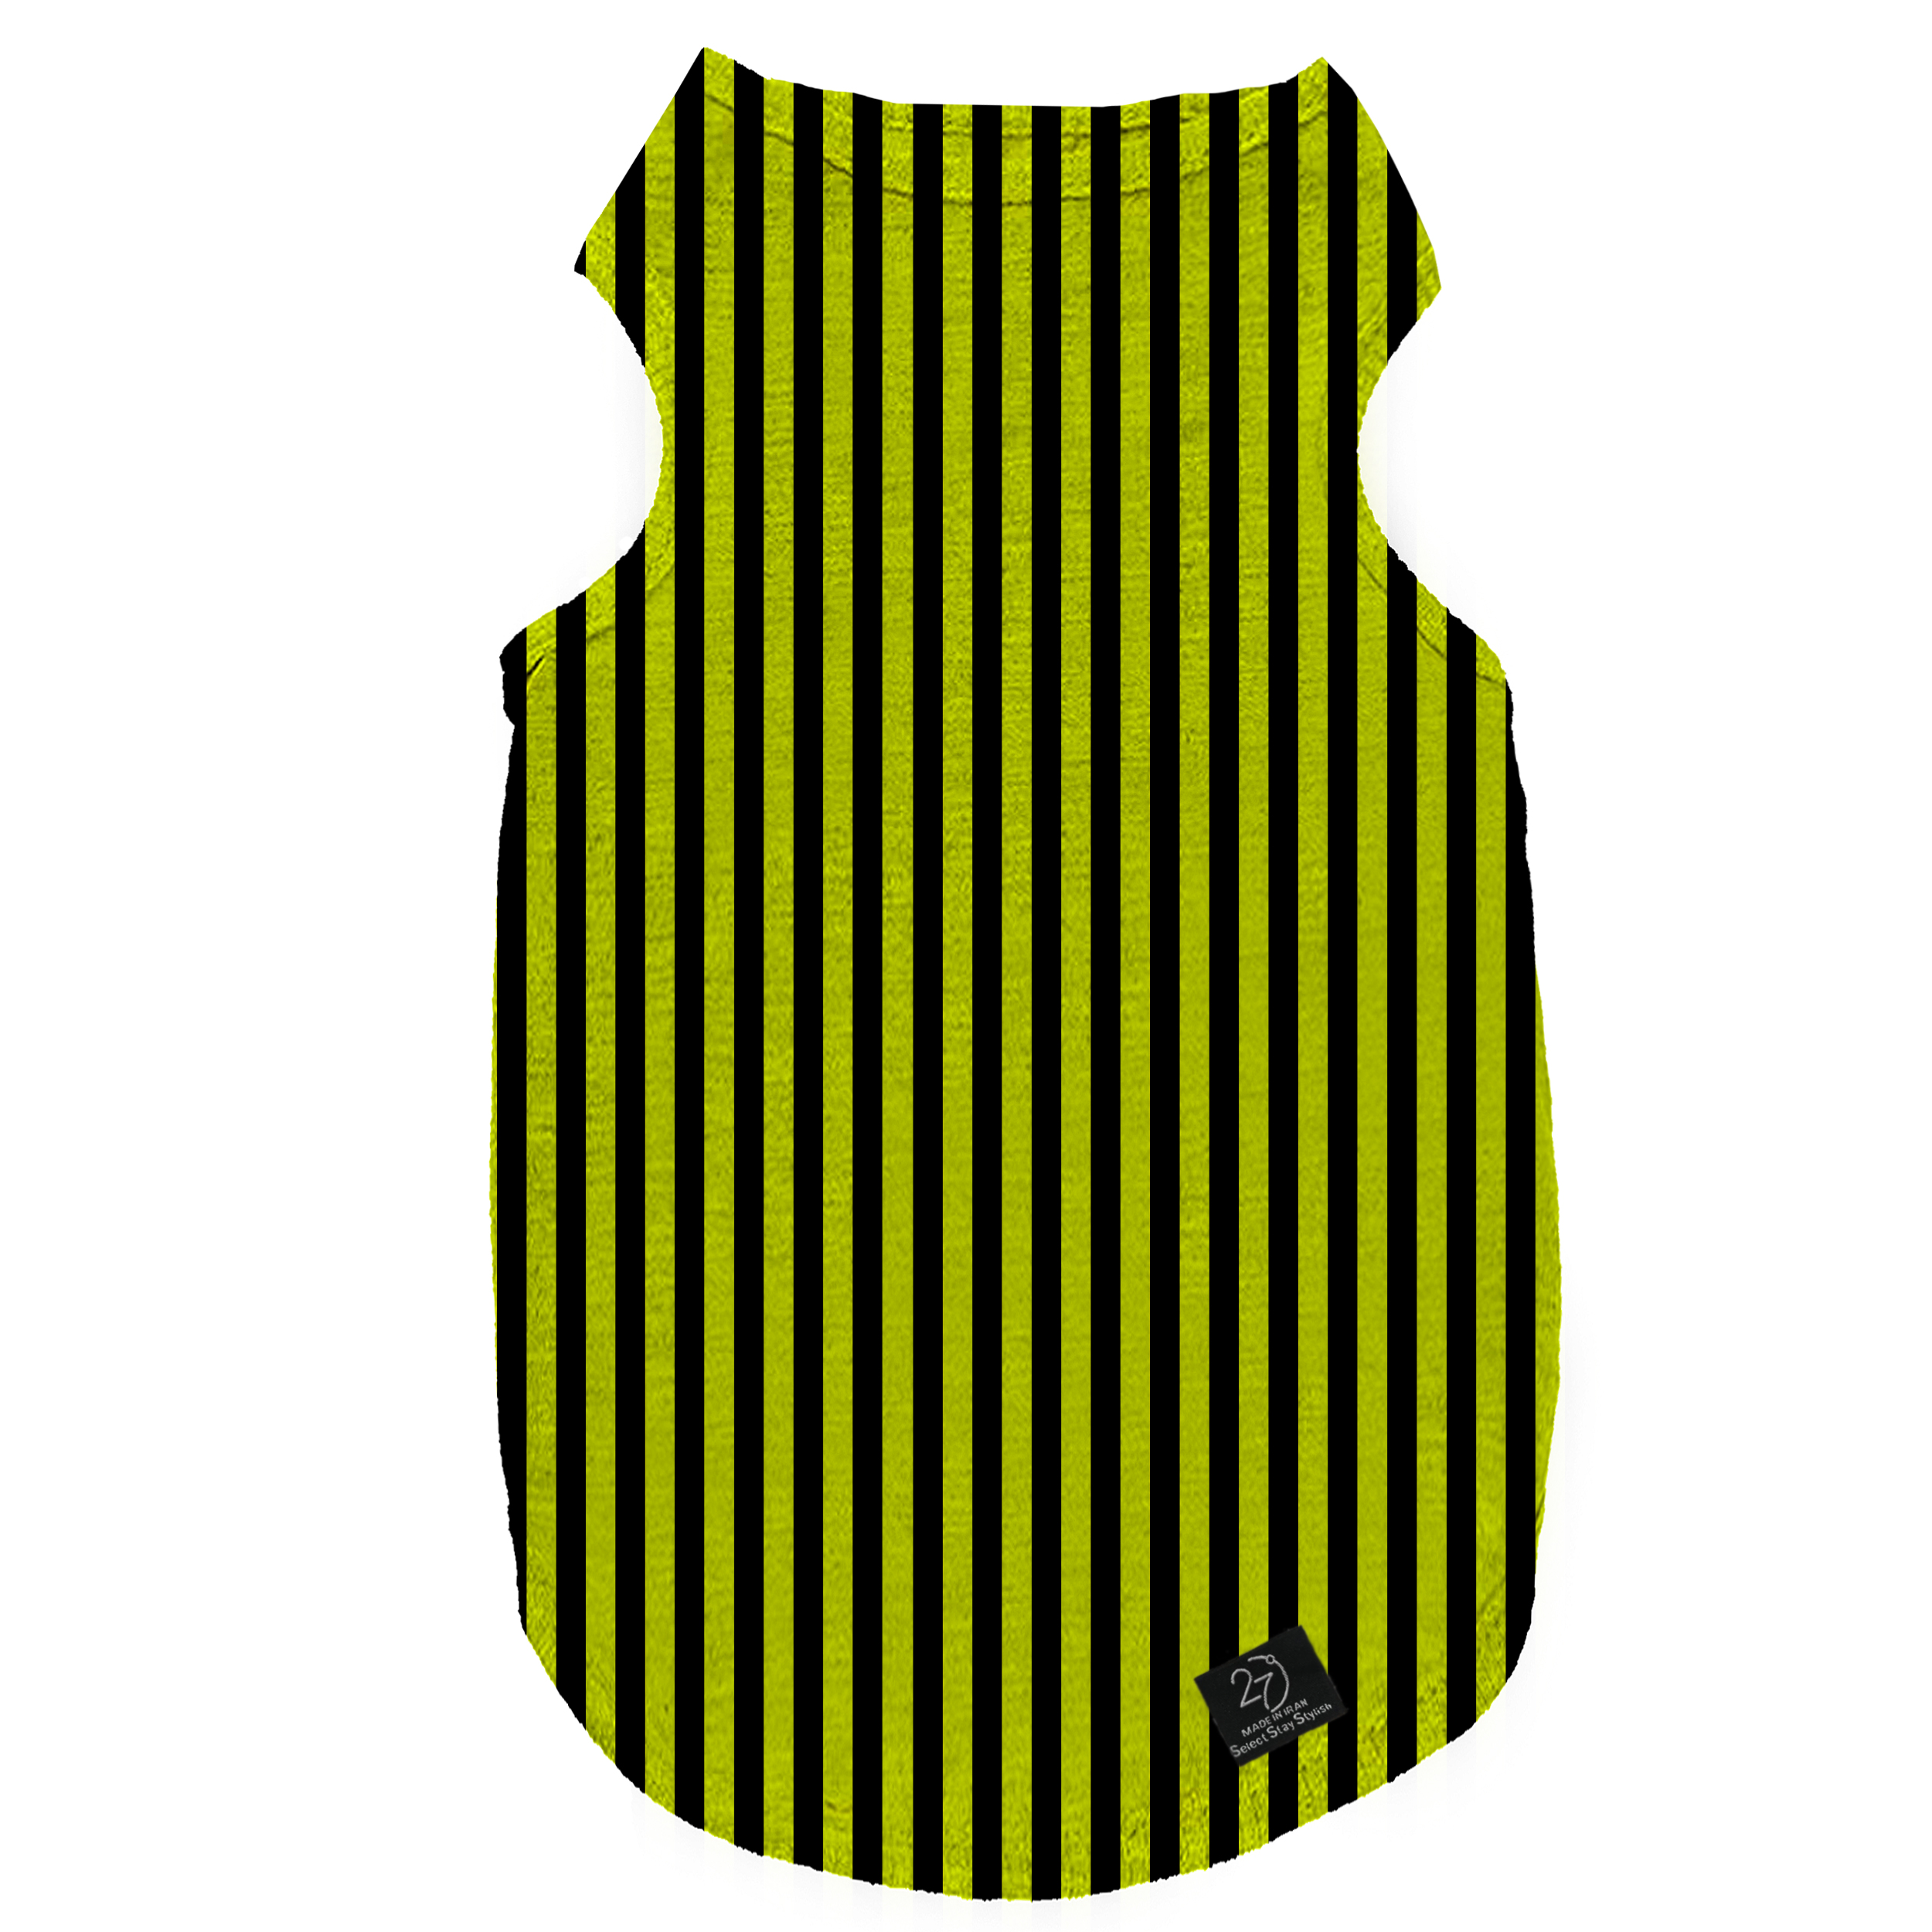 لباس سگ و گربه 27 طرح Black & Yellow Stripes کد MH227 سایز XL